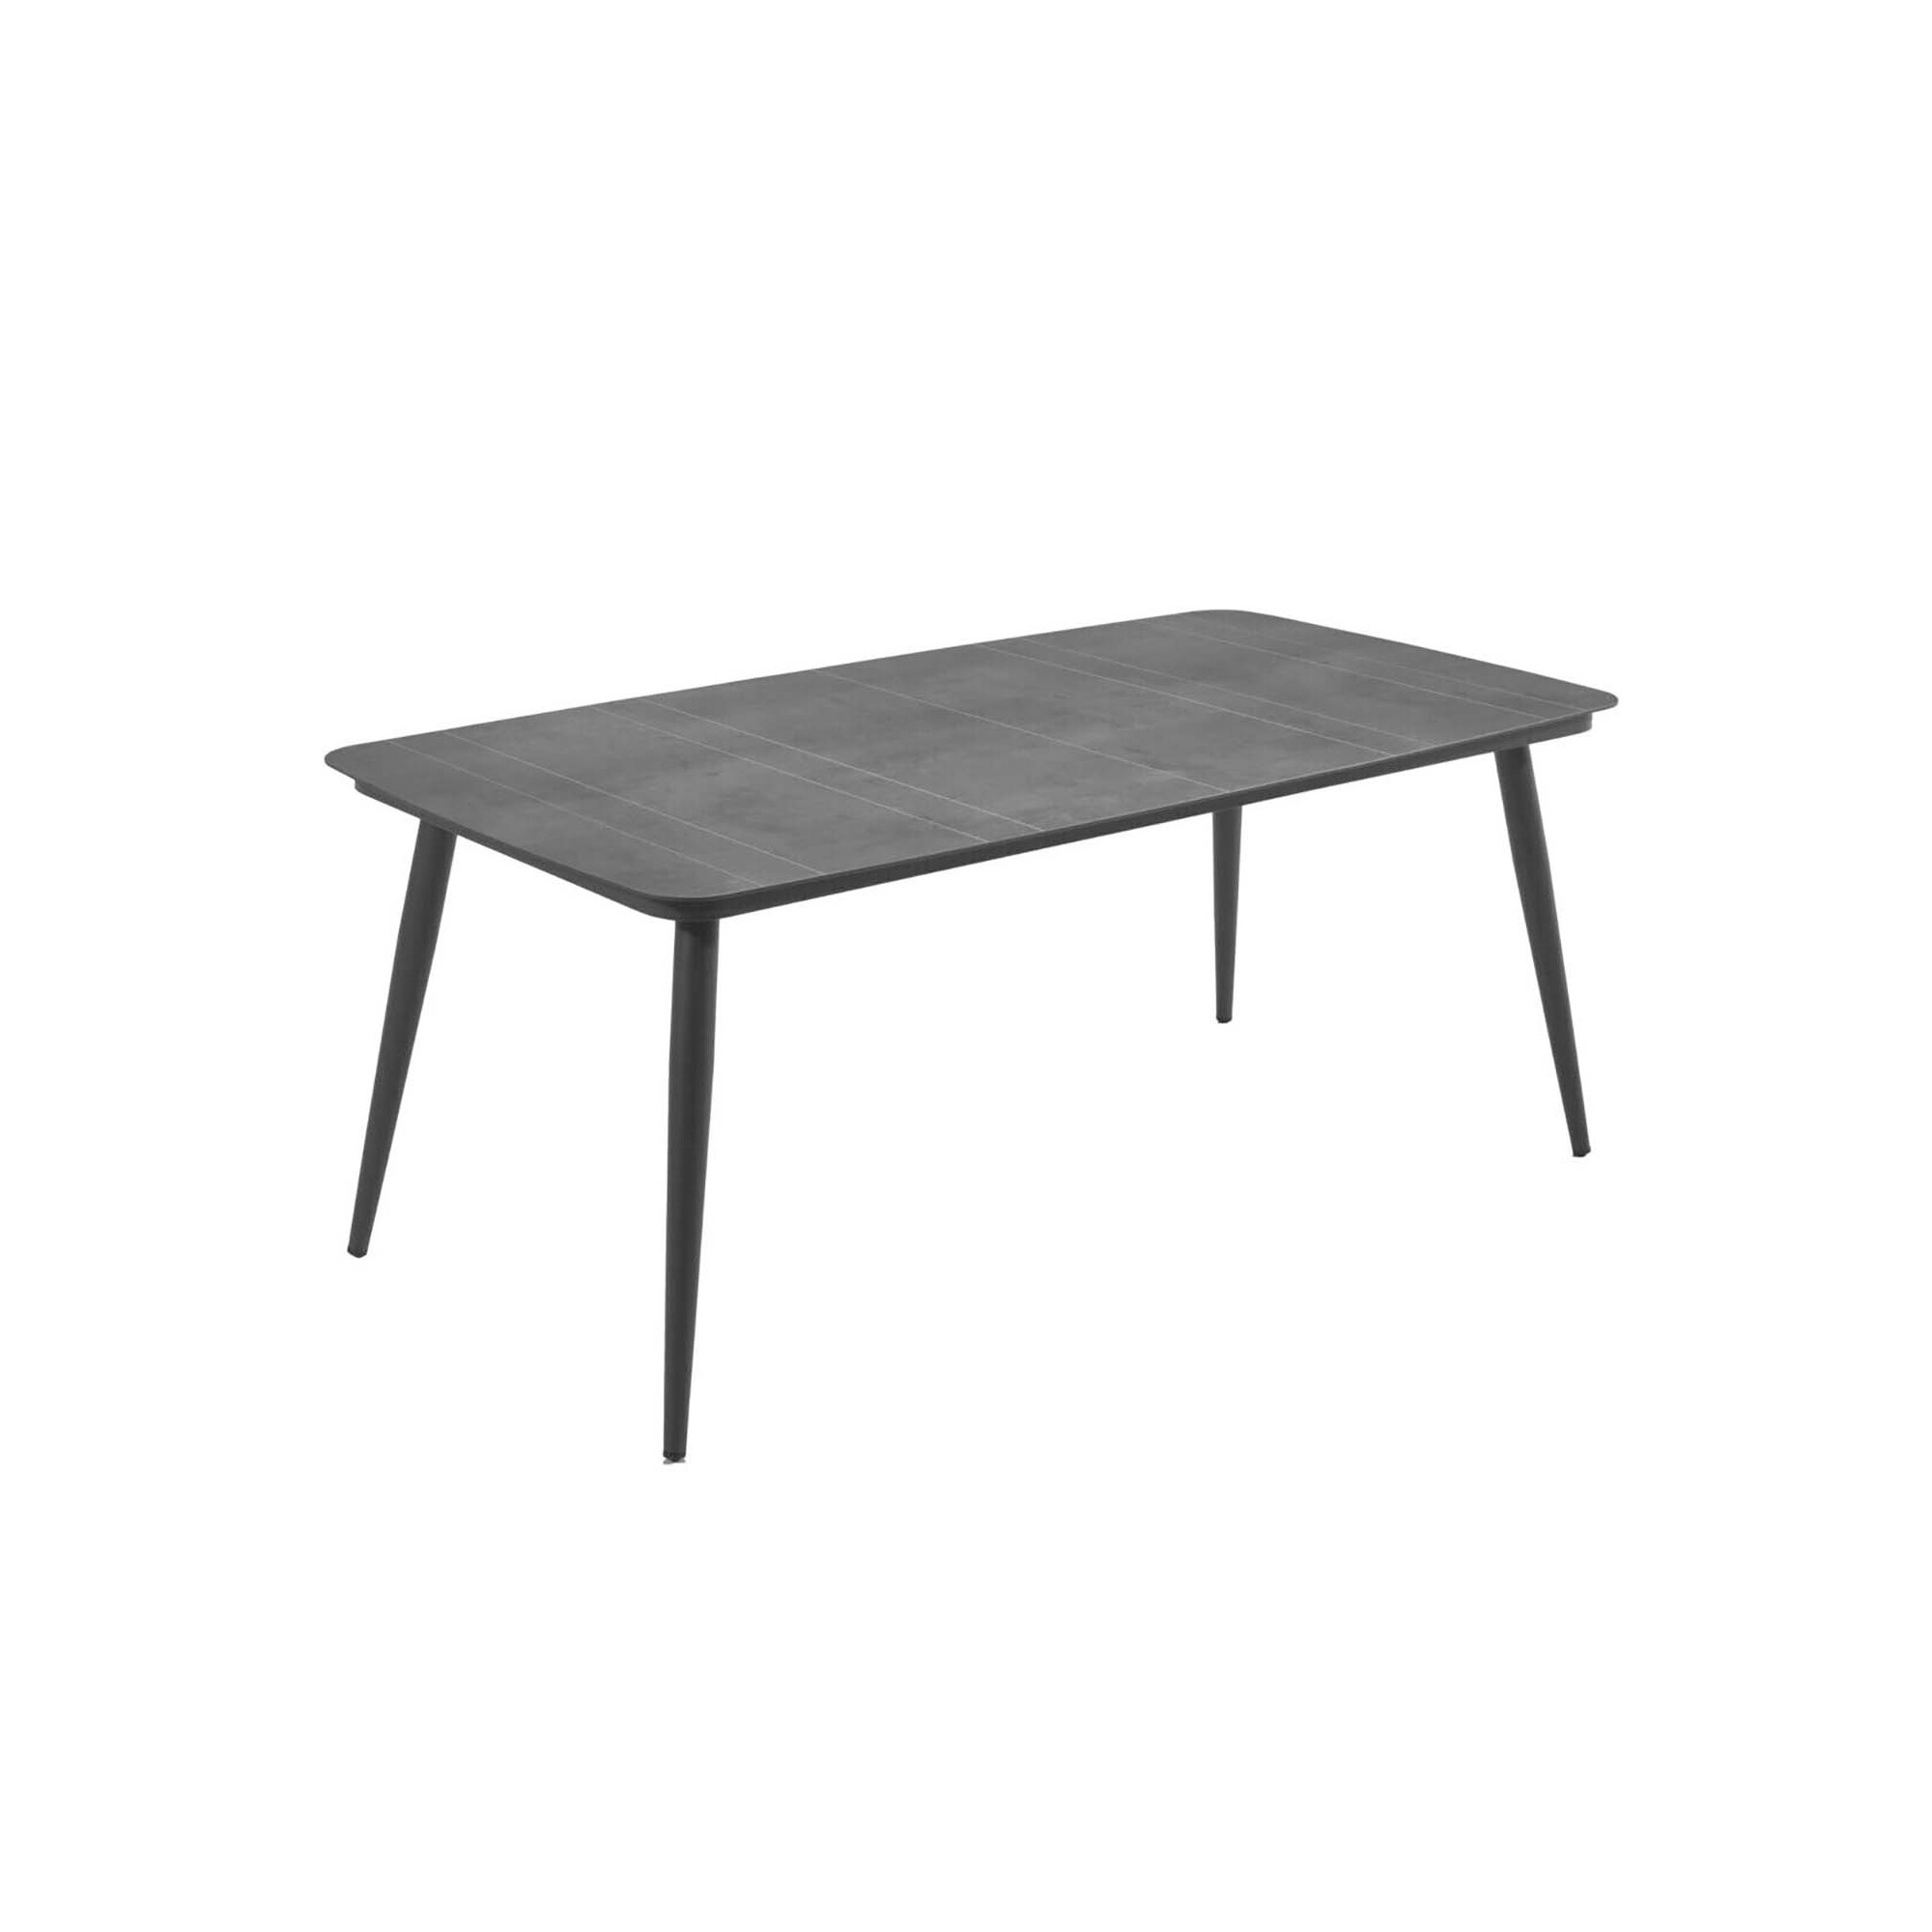 Table de jardin Basel 200x100cm gris anthracite Gescova